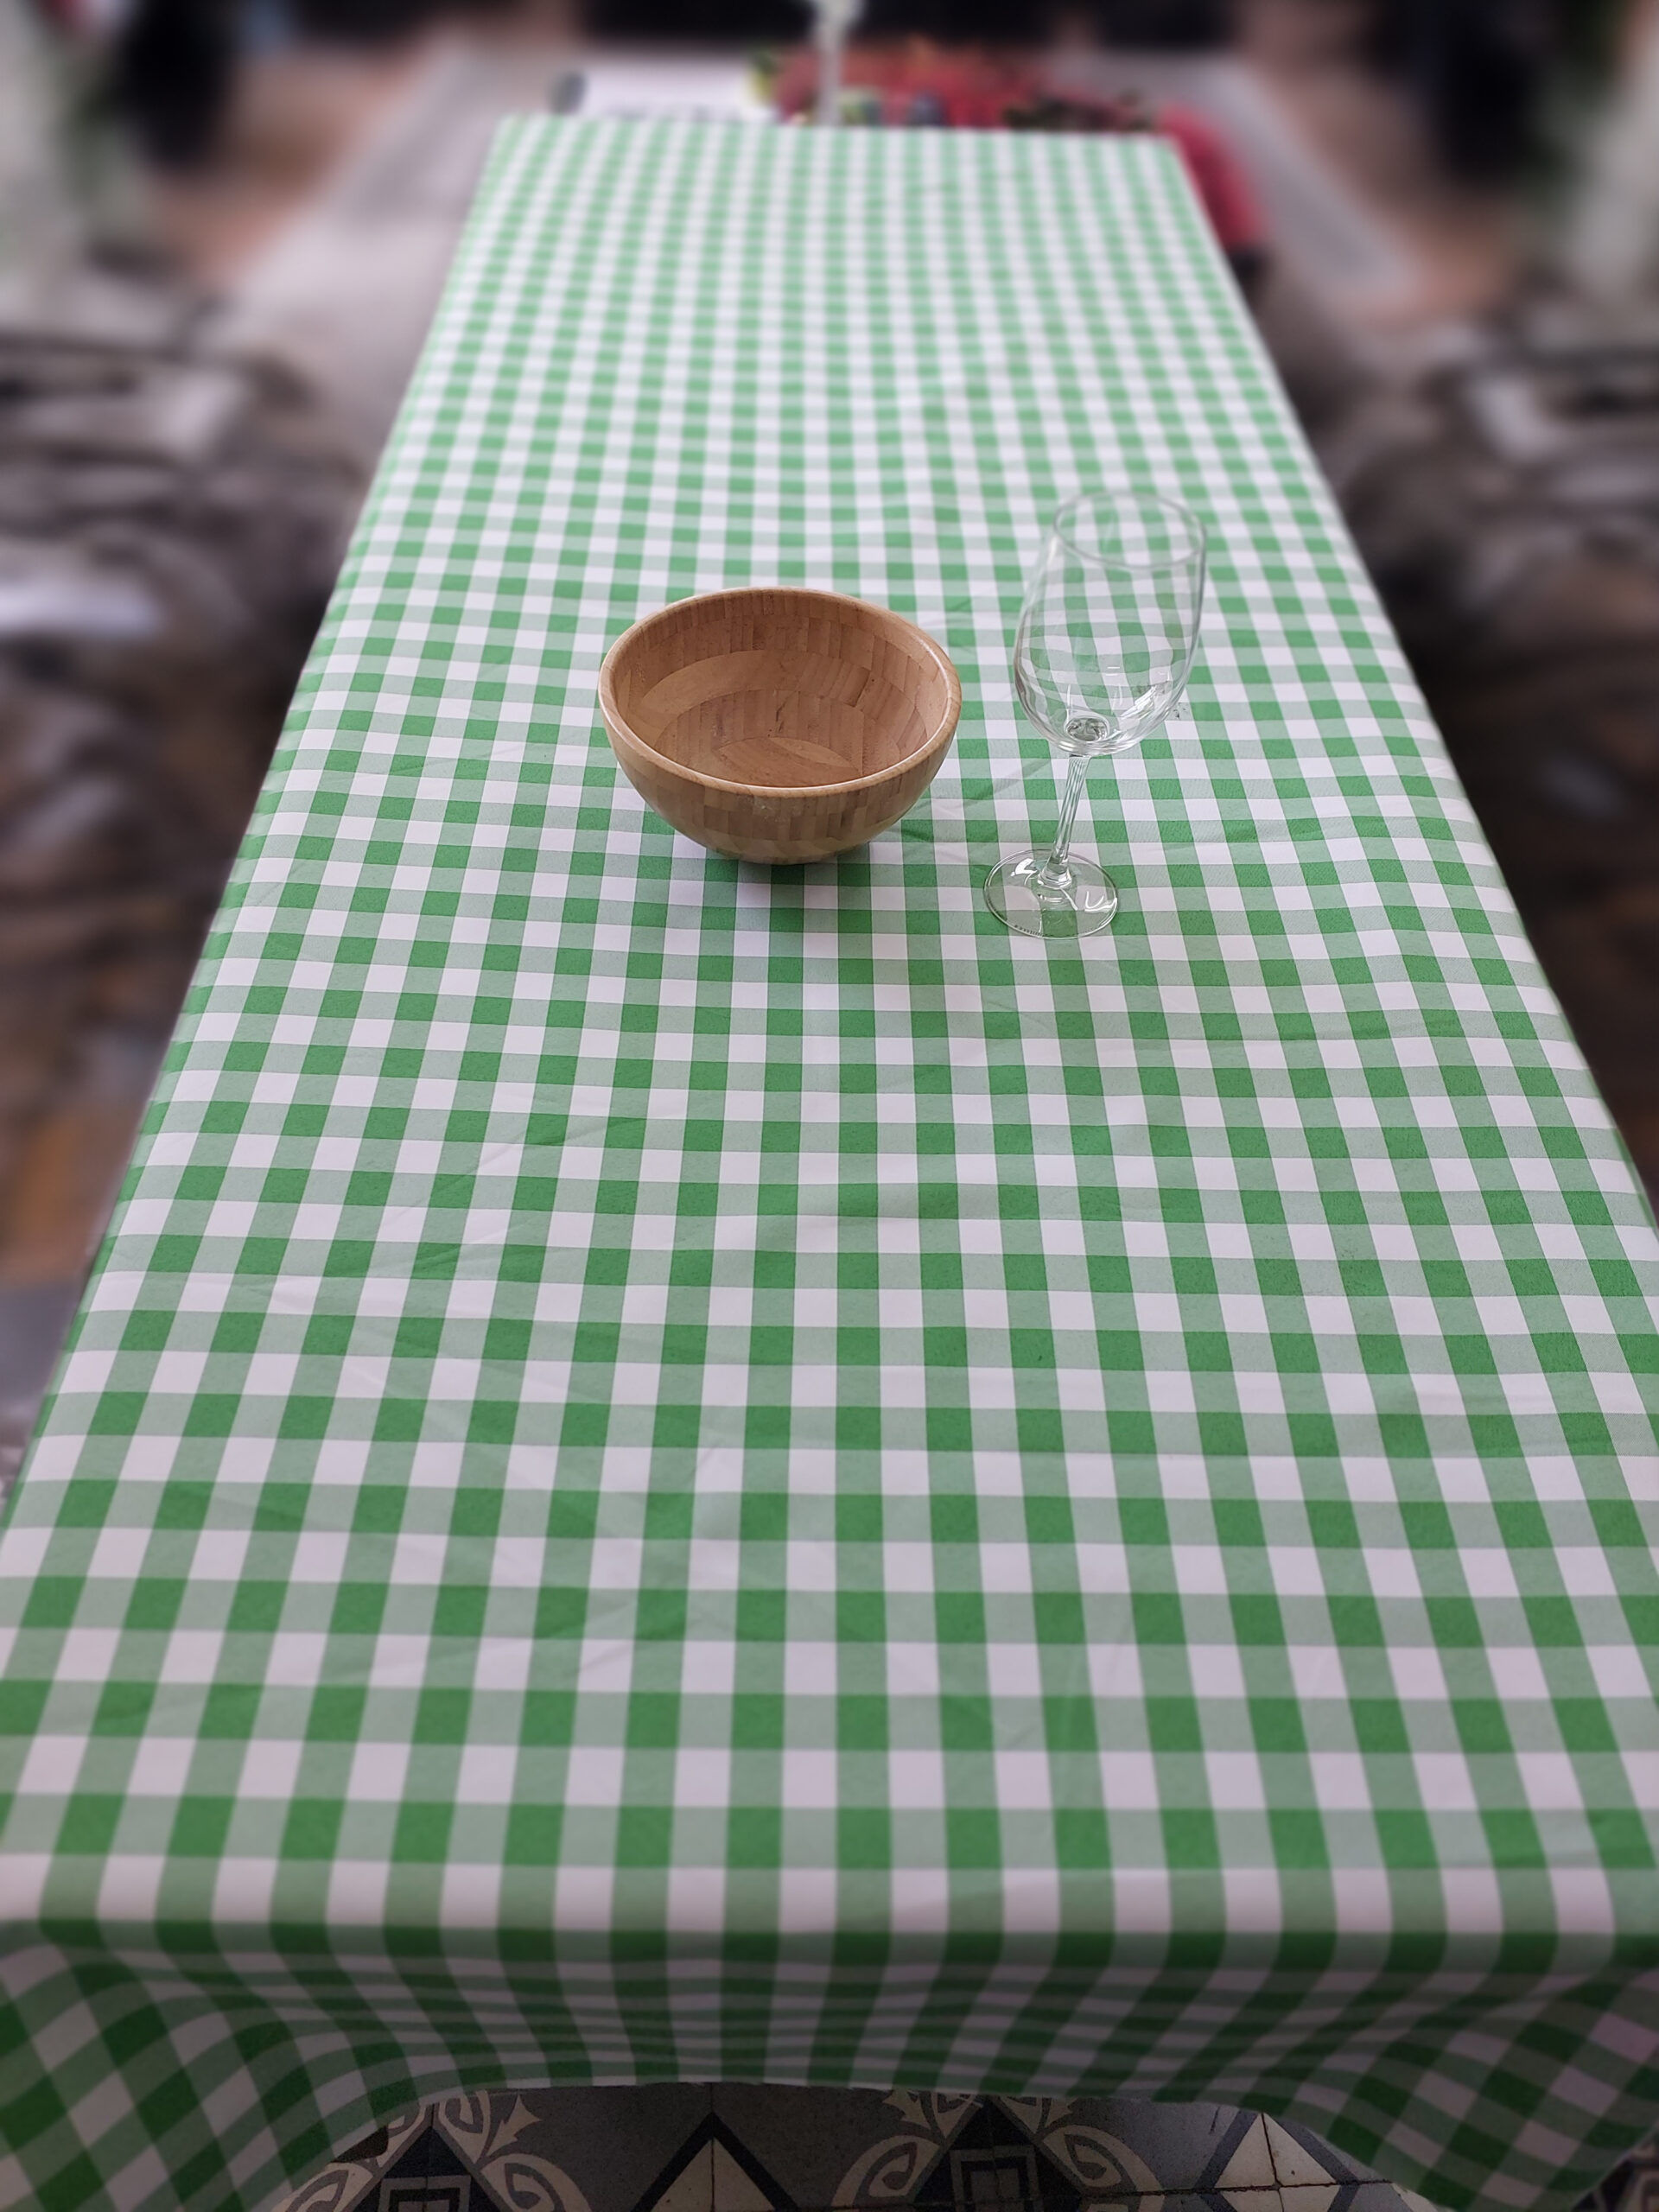  מפת שולחן - משובץ ירוק לבן 2